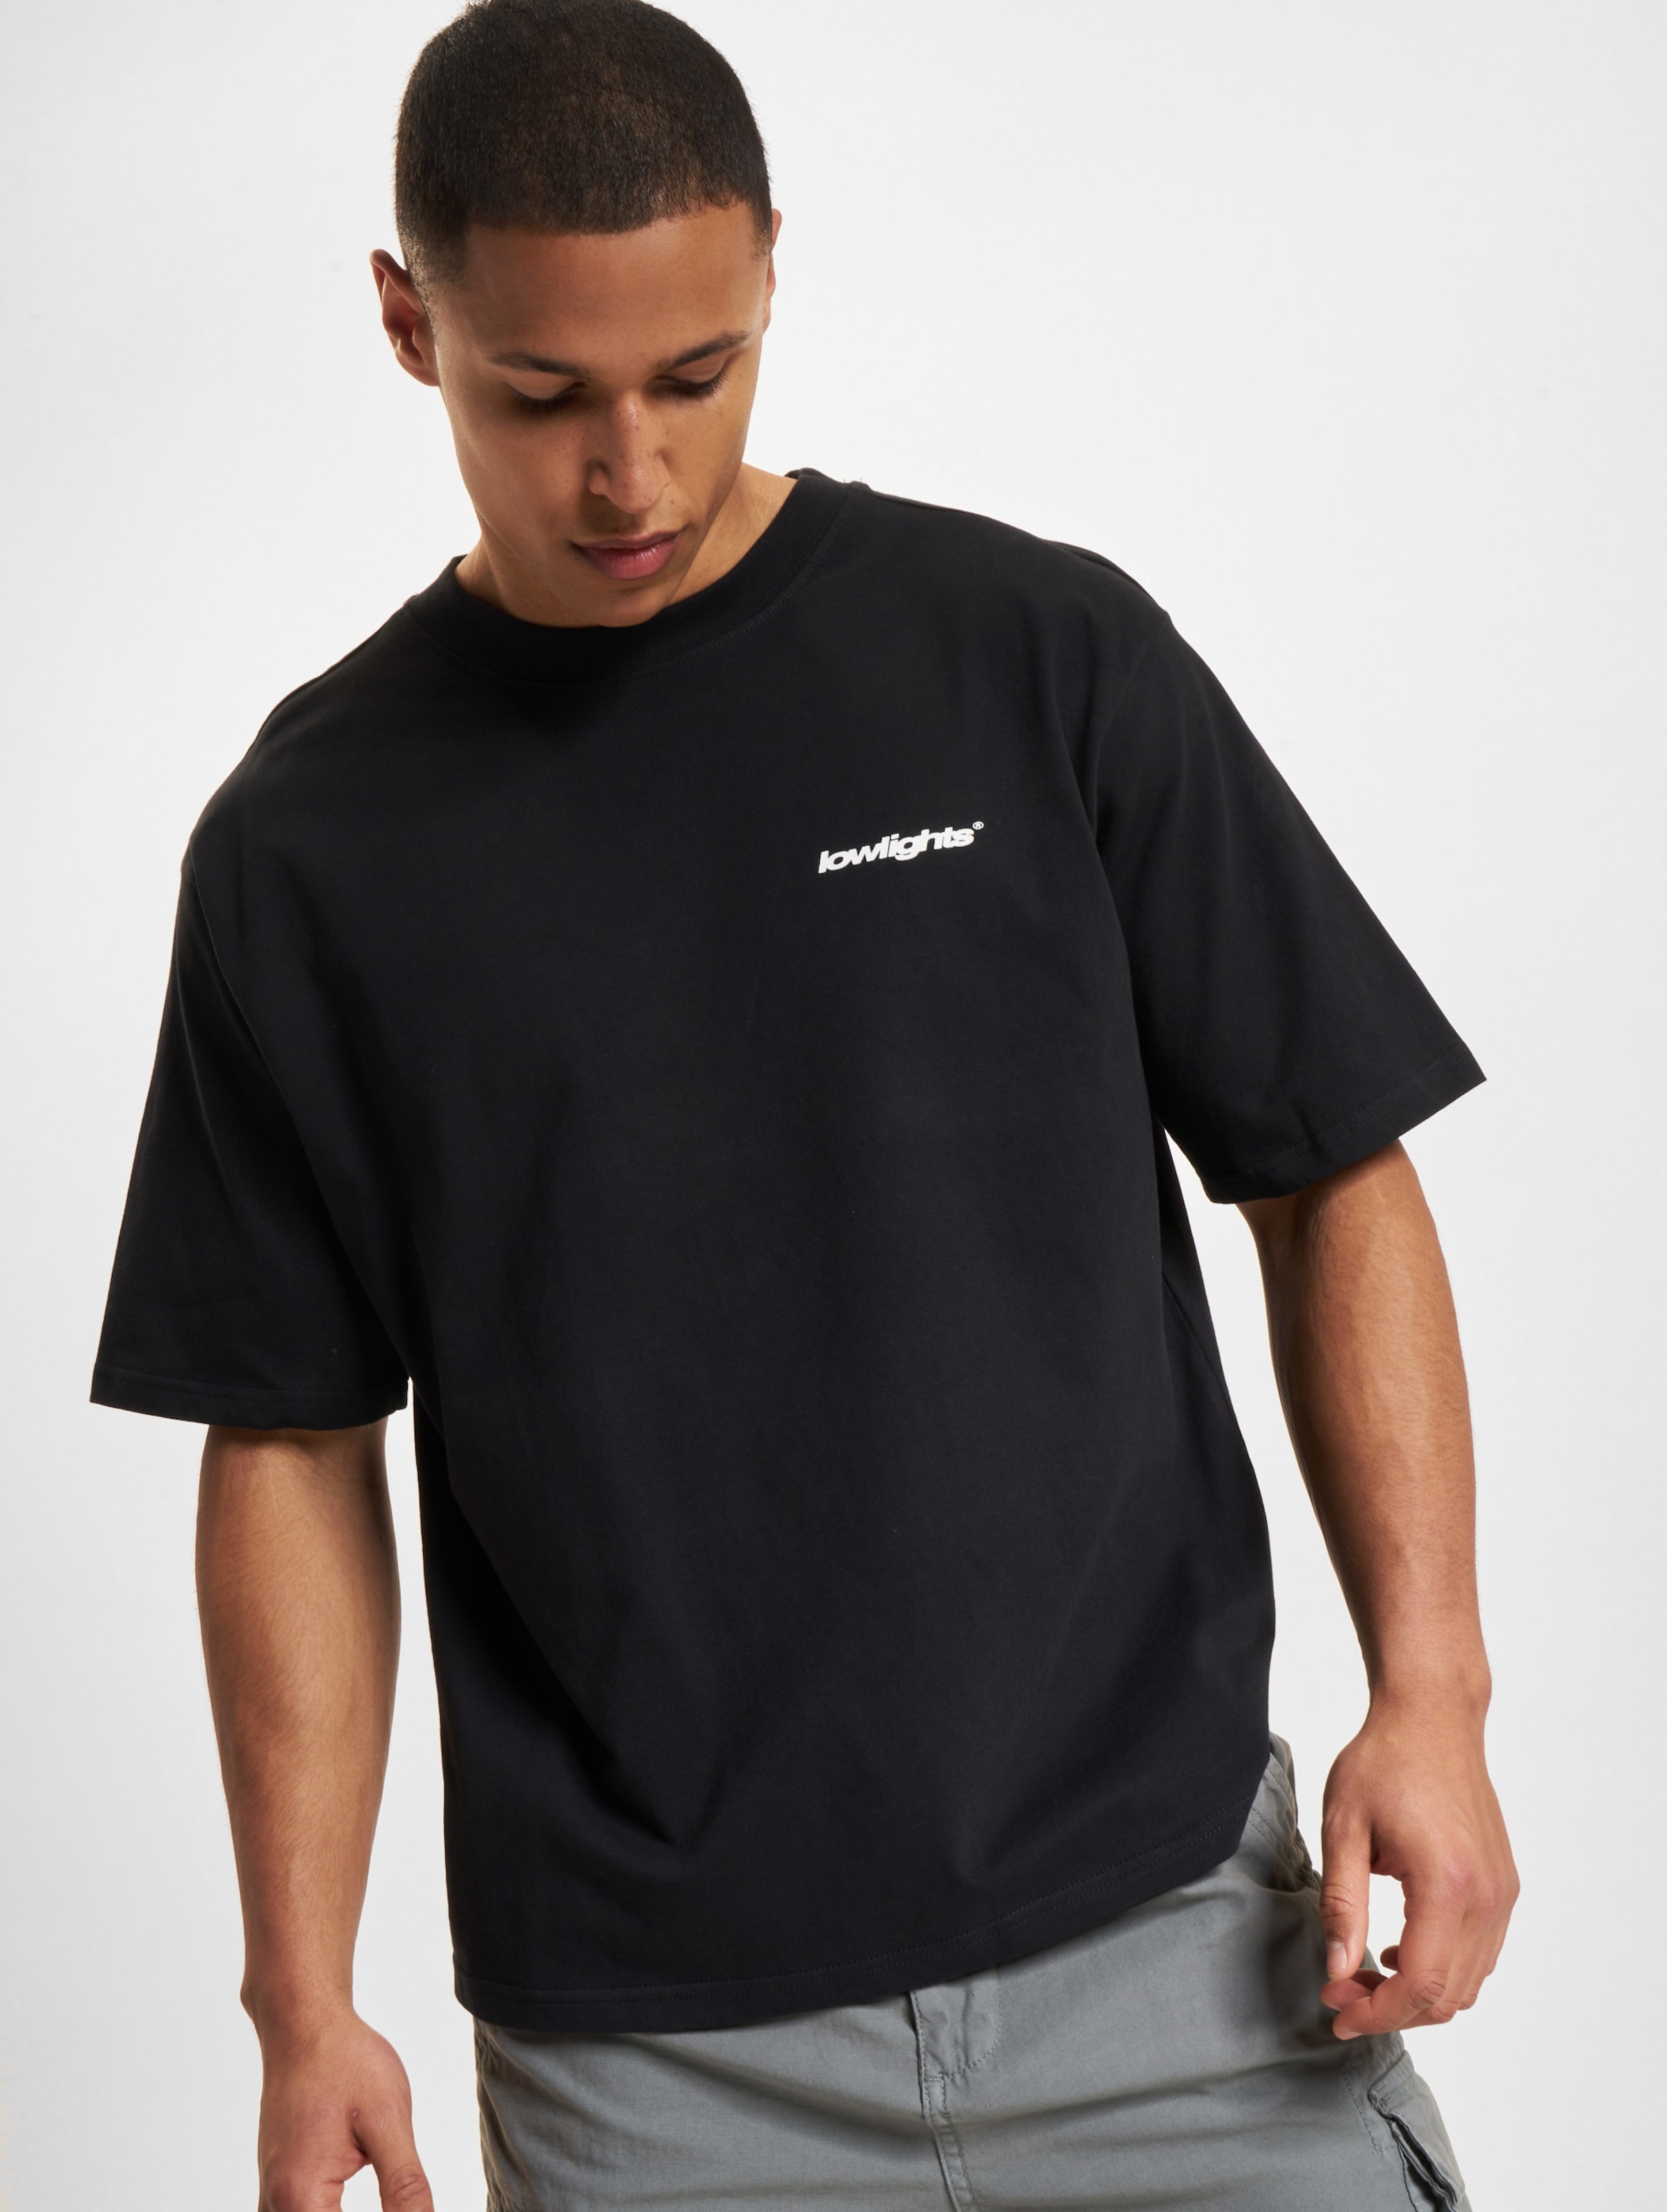 Low Lights Studios Basic T-Shirt black Männer,Unisex op kleur zwart, Maat M